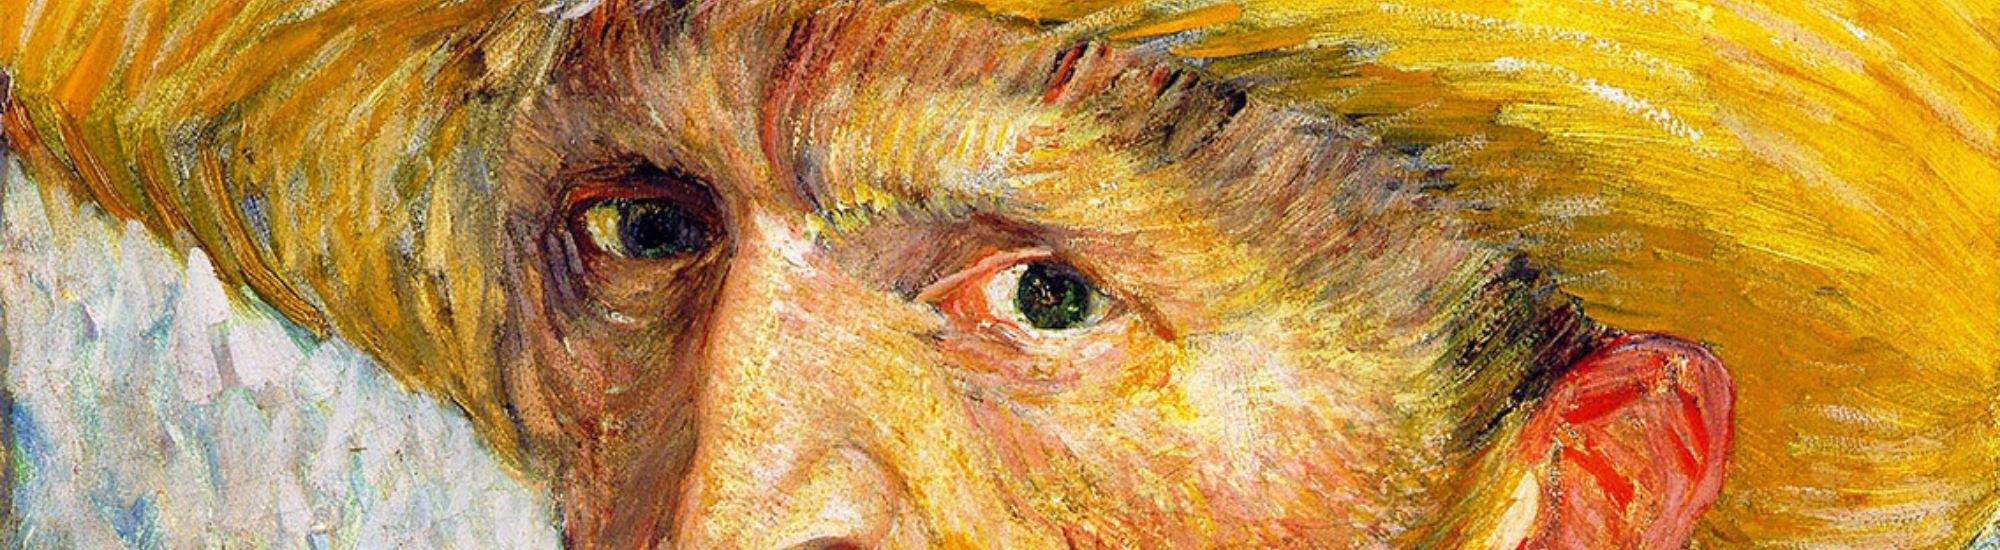 Exposition Multisensorielle de Van Gogh à Cracovie : Une Rencontre avec la Grande Art